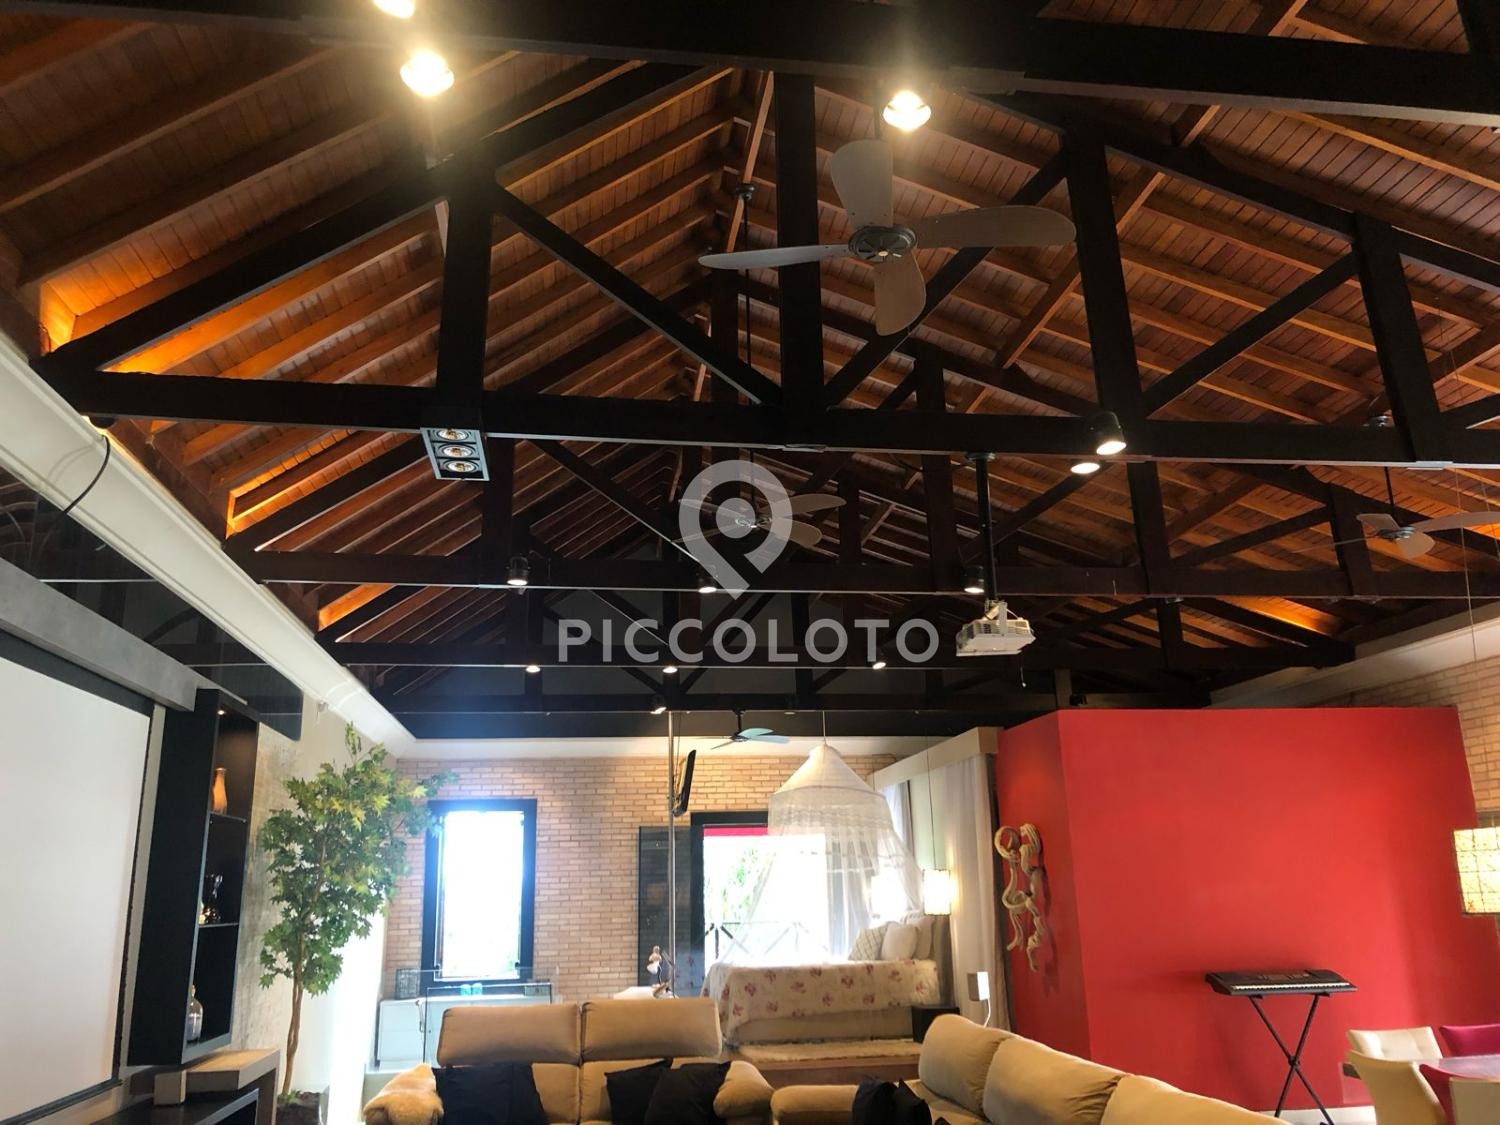 Piccoloto -Casa à venda no Jardim Santa Genebra em Campinas